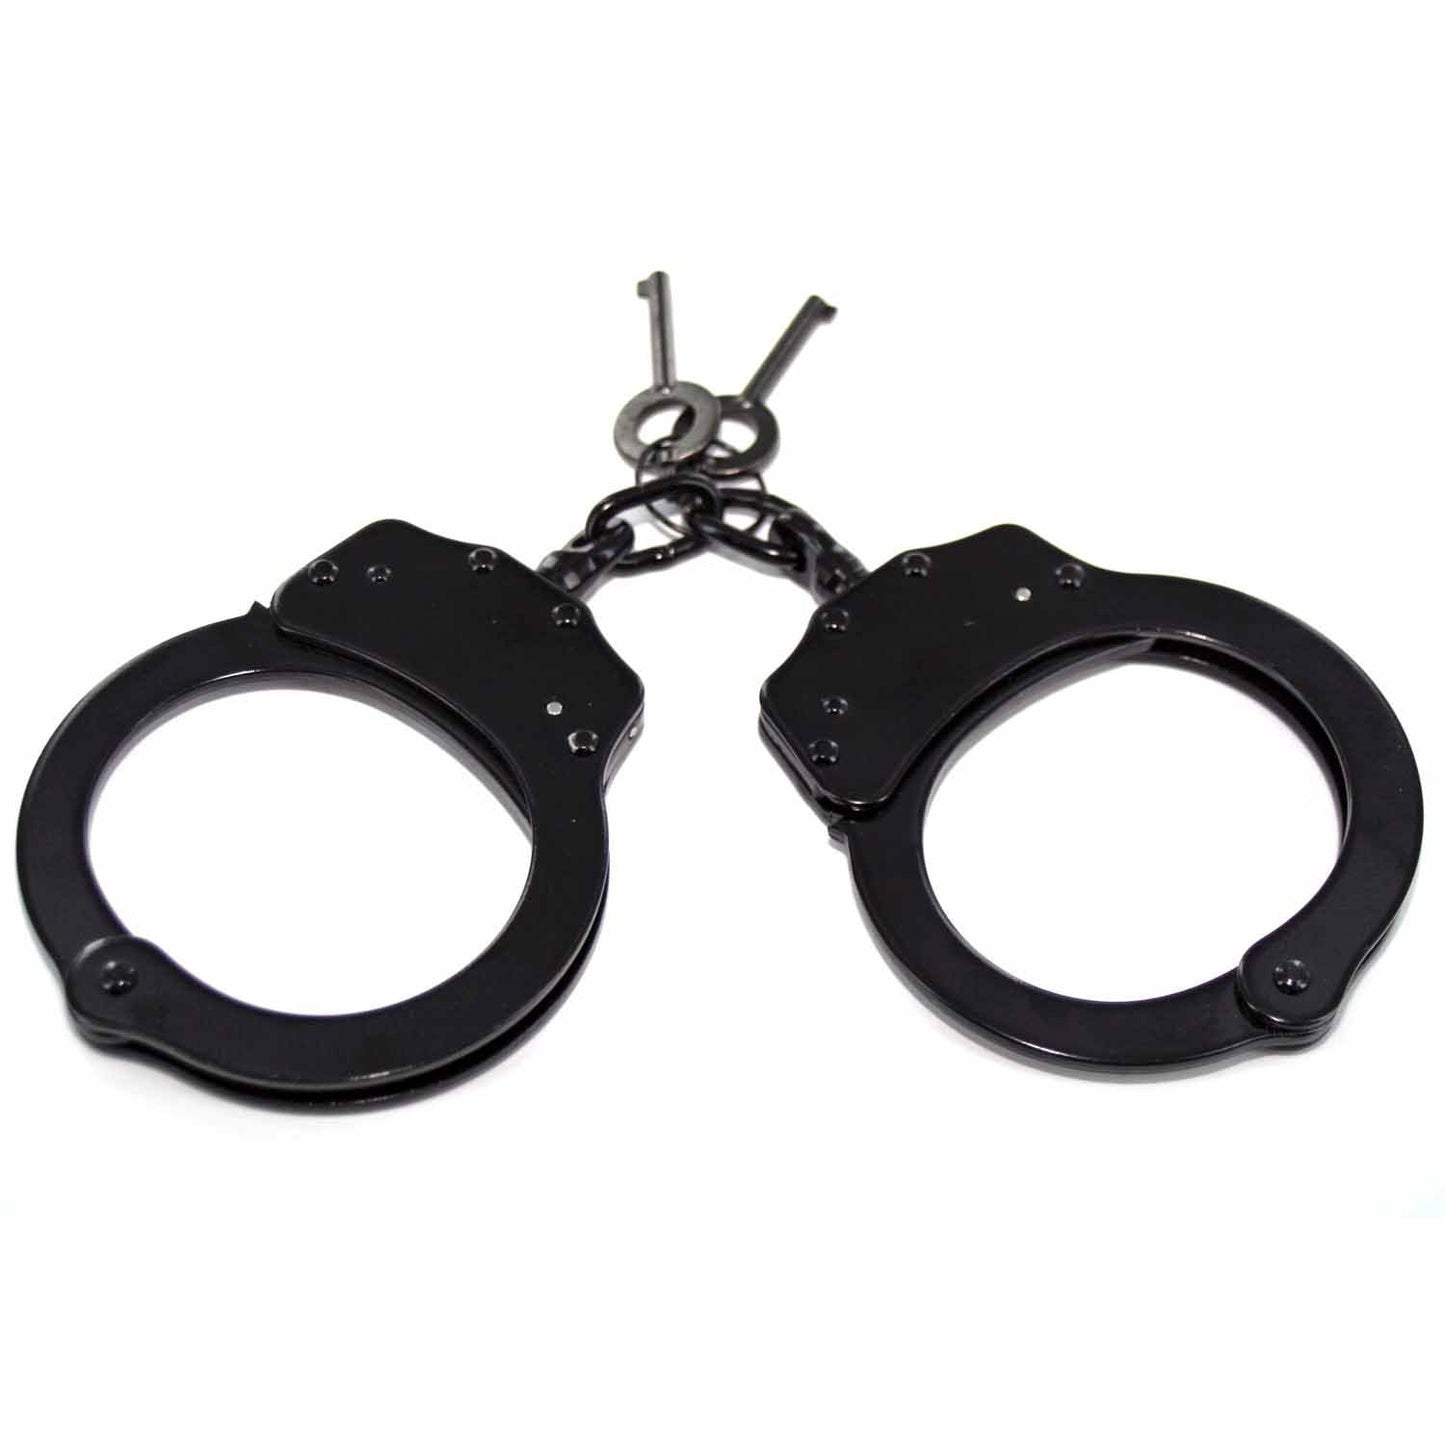 Professional Handcuffs Black Steel Police Duty Double Lock w/Keys NEW